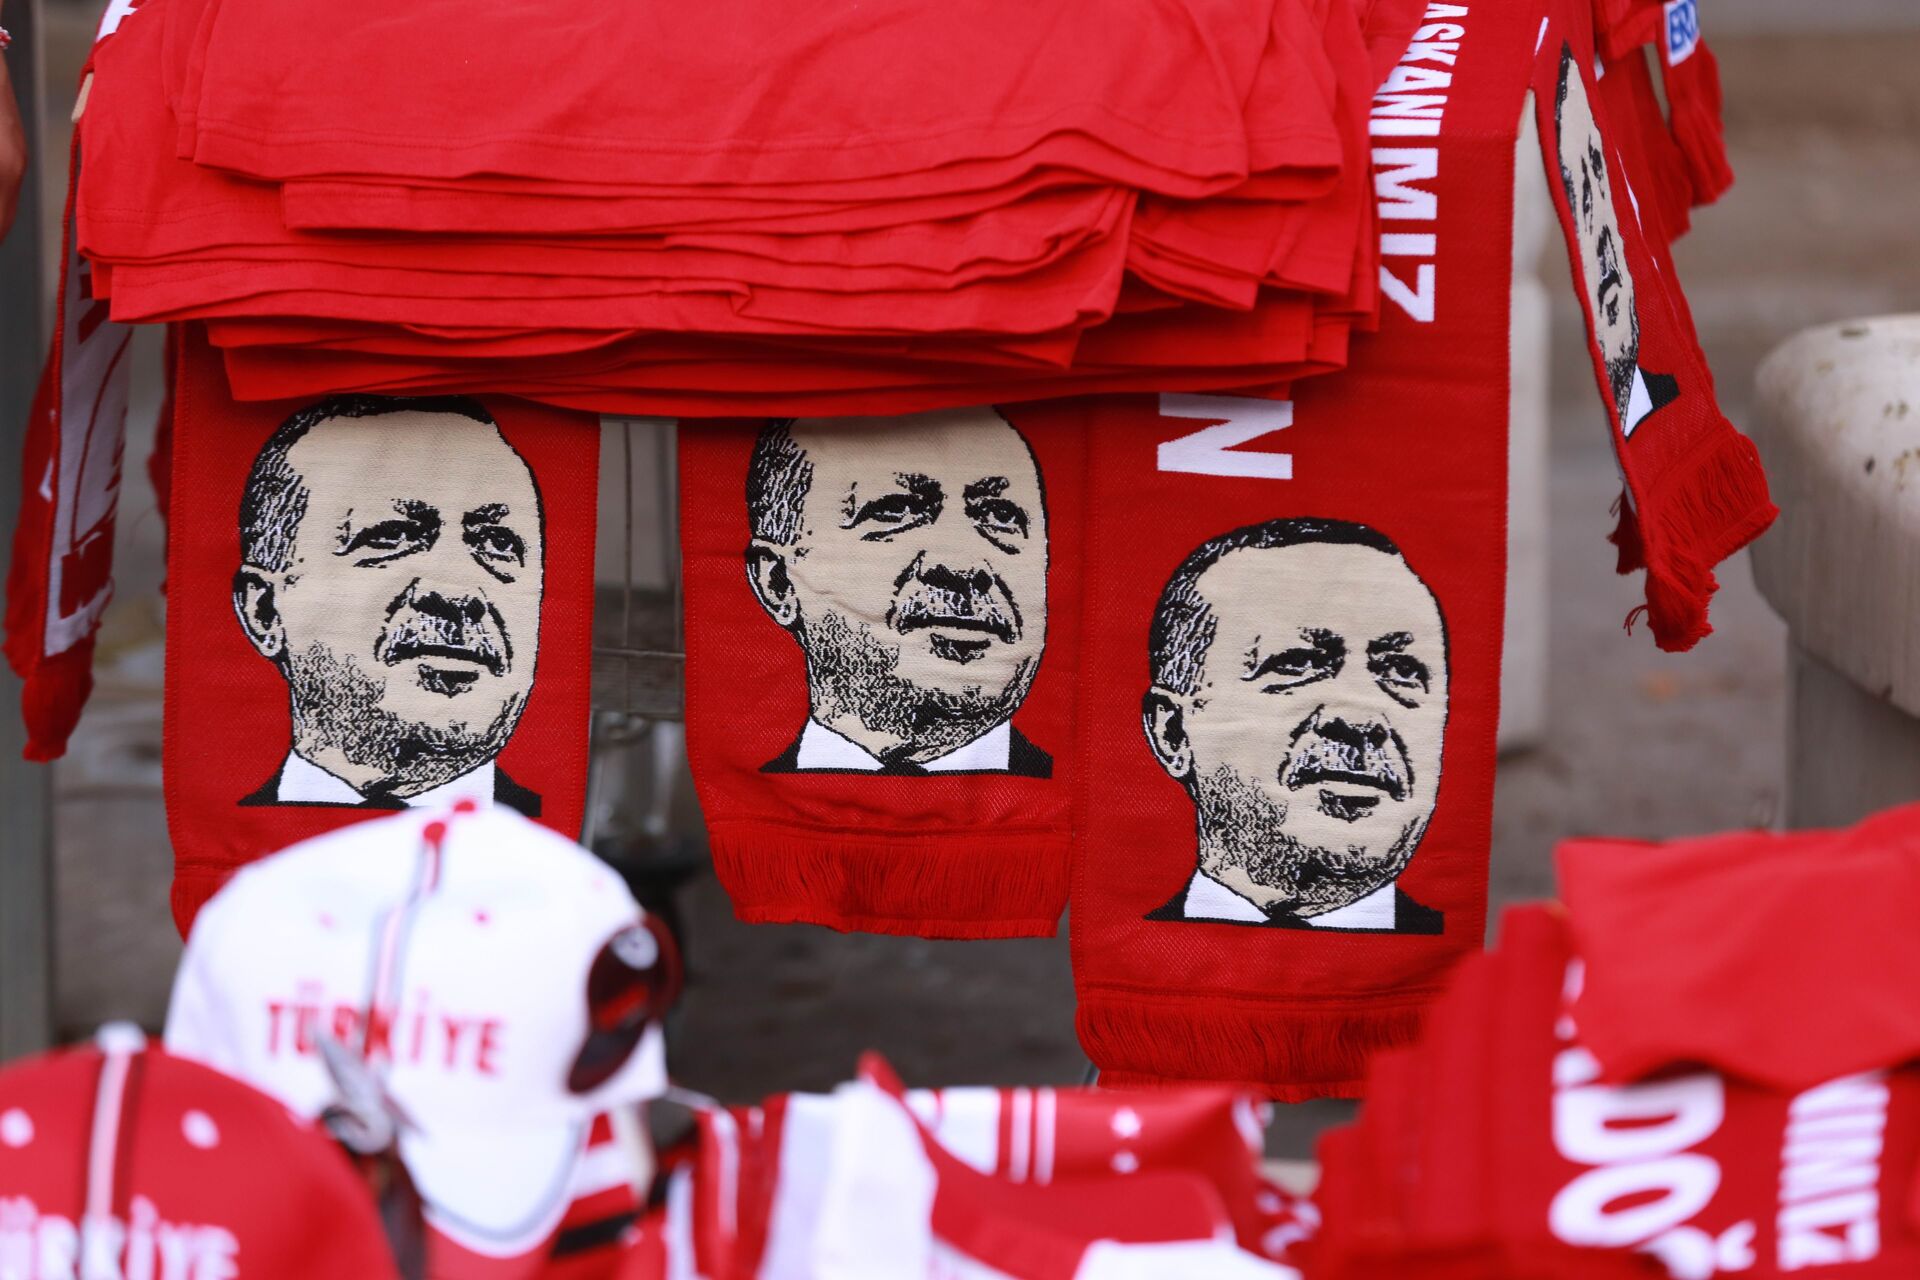 Eleições antecipadas na Turquia? 'Erdogan lidera partido dos nacionalistas incultos', diz analista - Sputnik Brasil, 1920, 23.08.2021